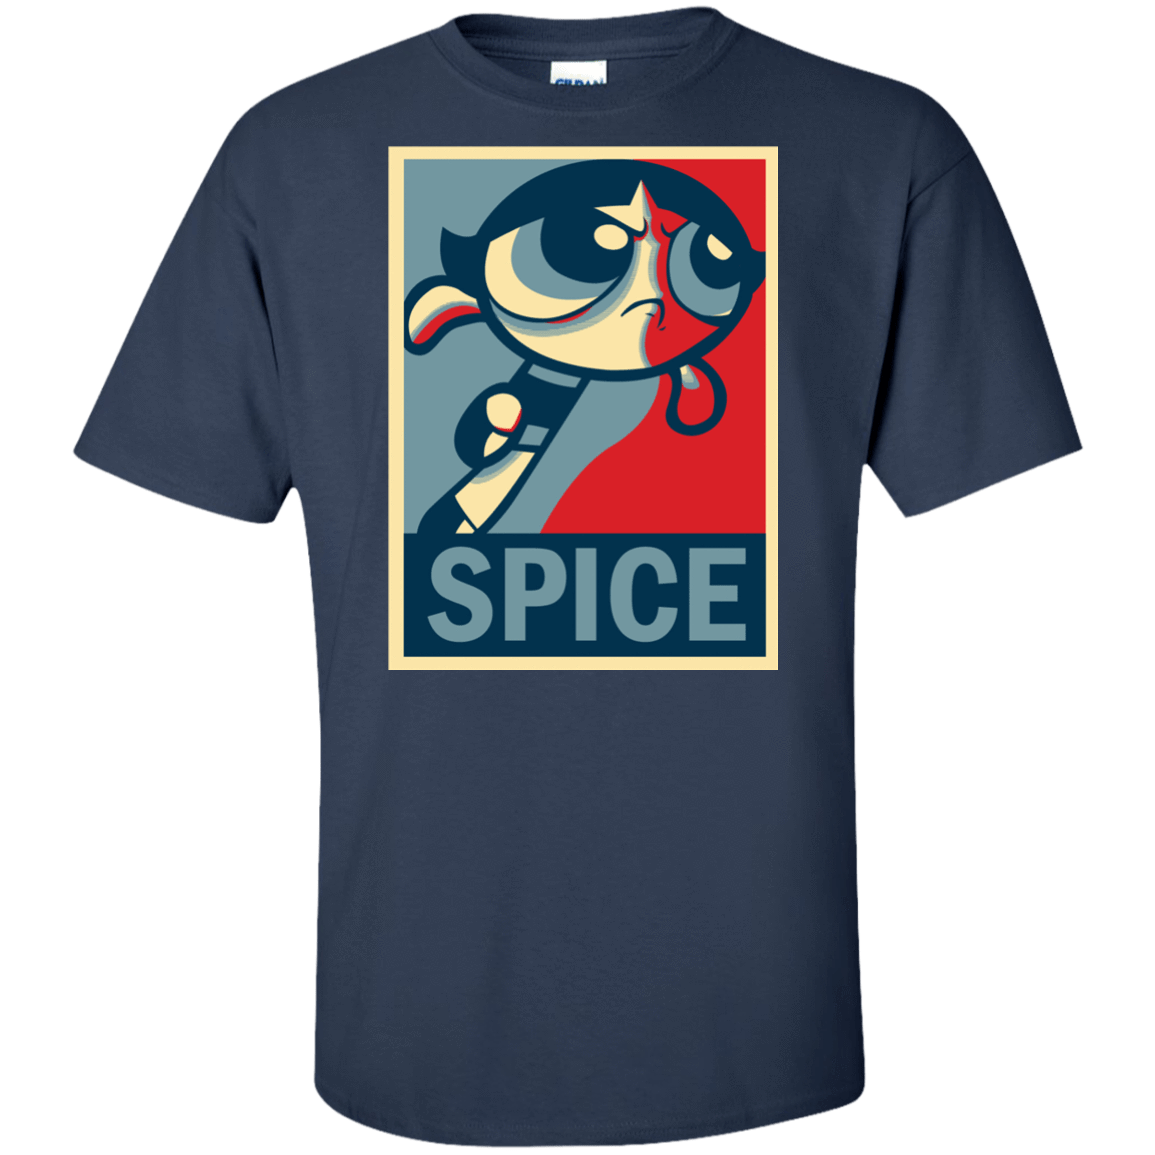 T-Shirts Navy / XLT Spice Powerpuff Tall T-Shirt